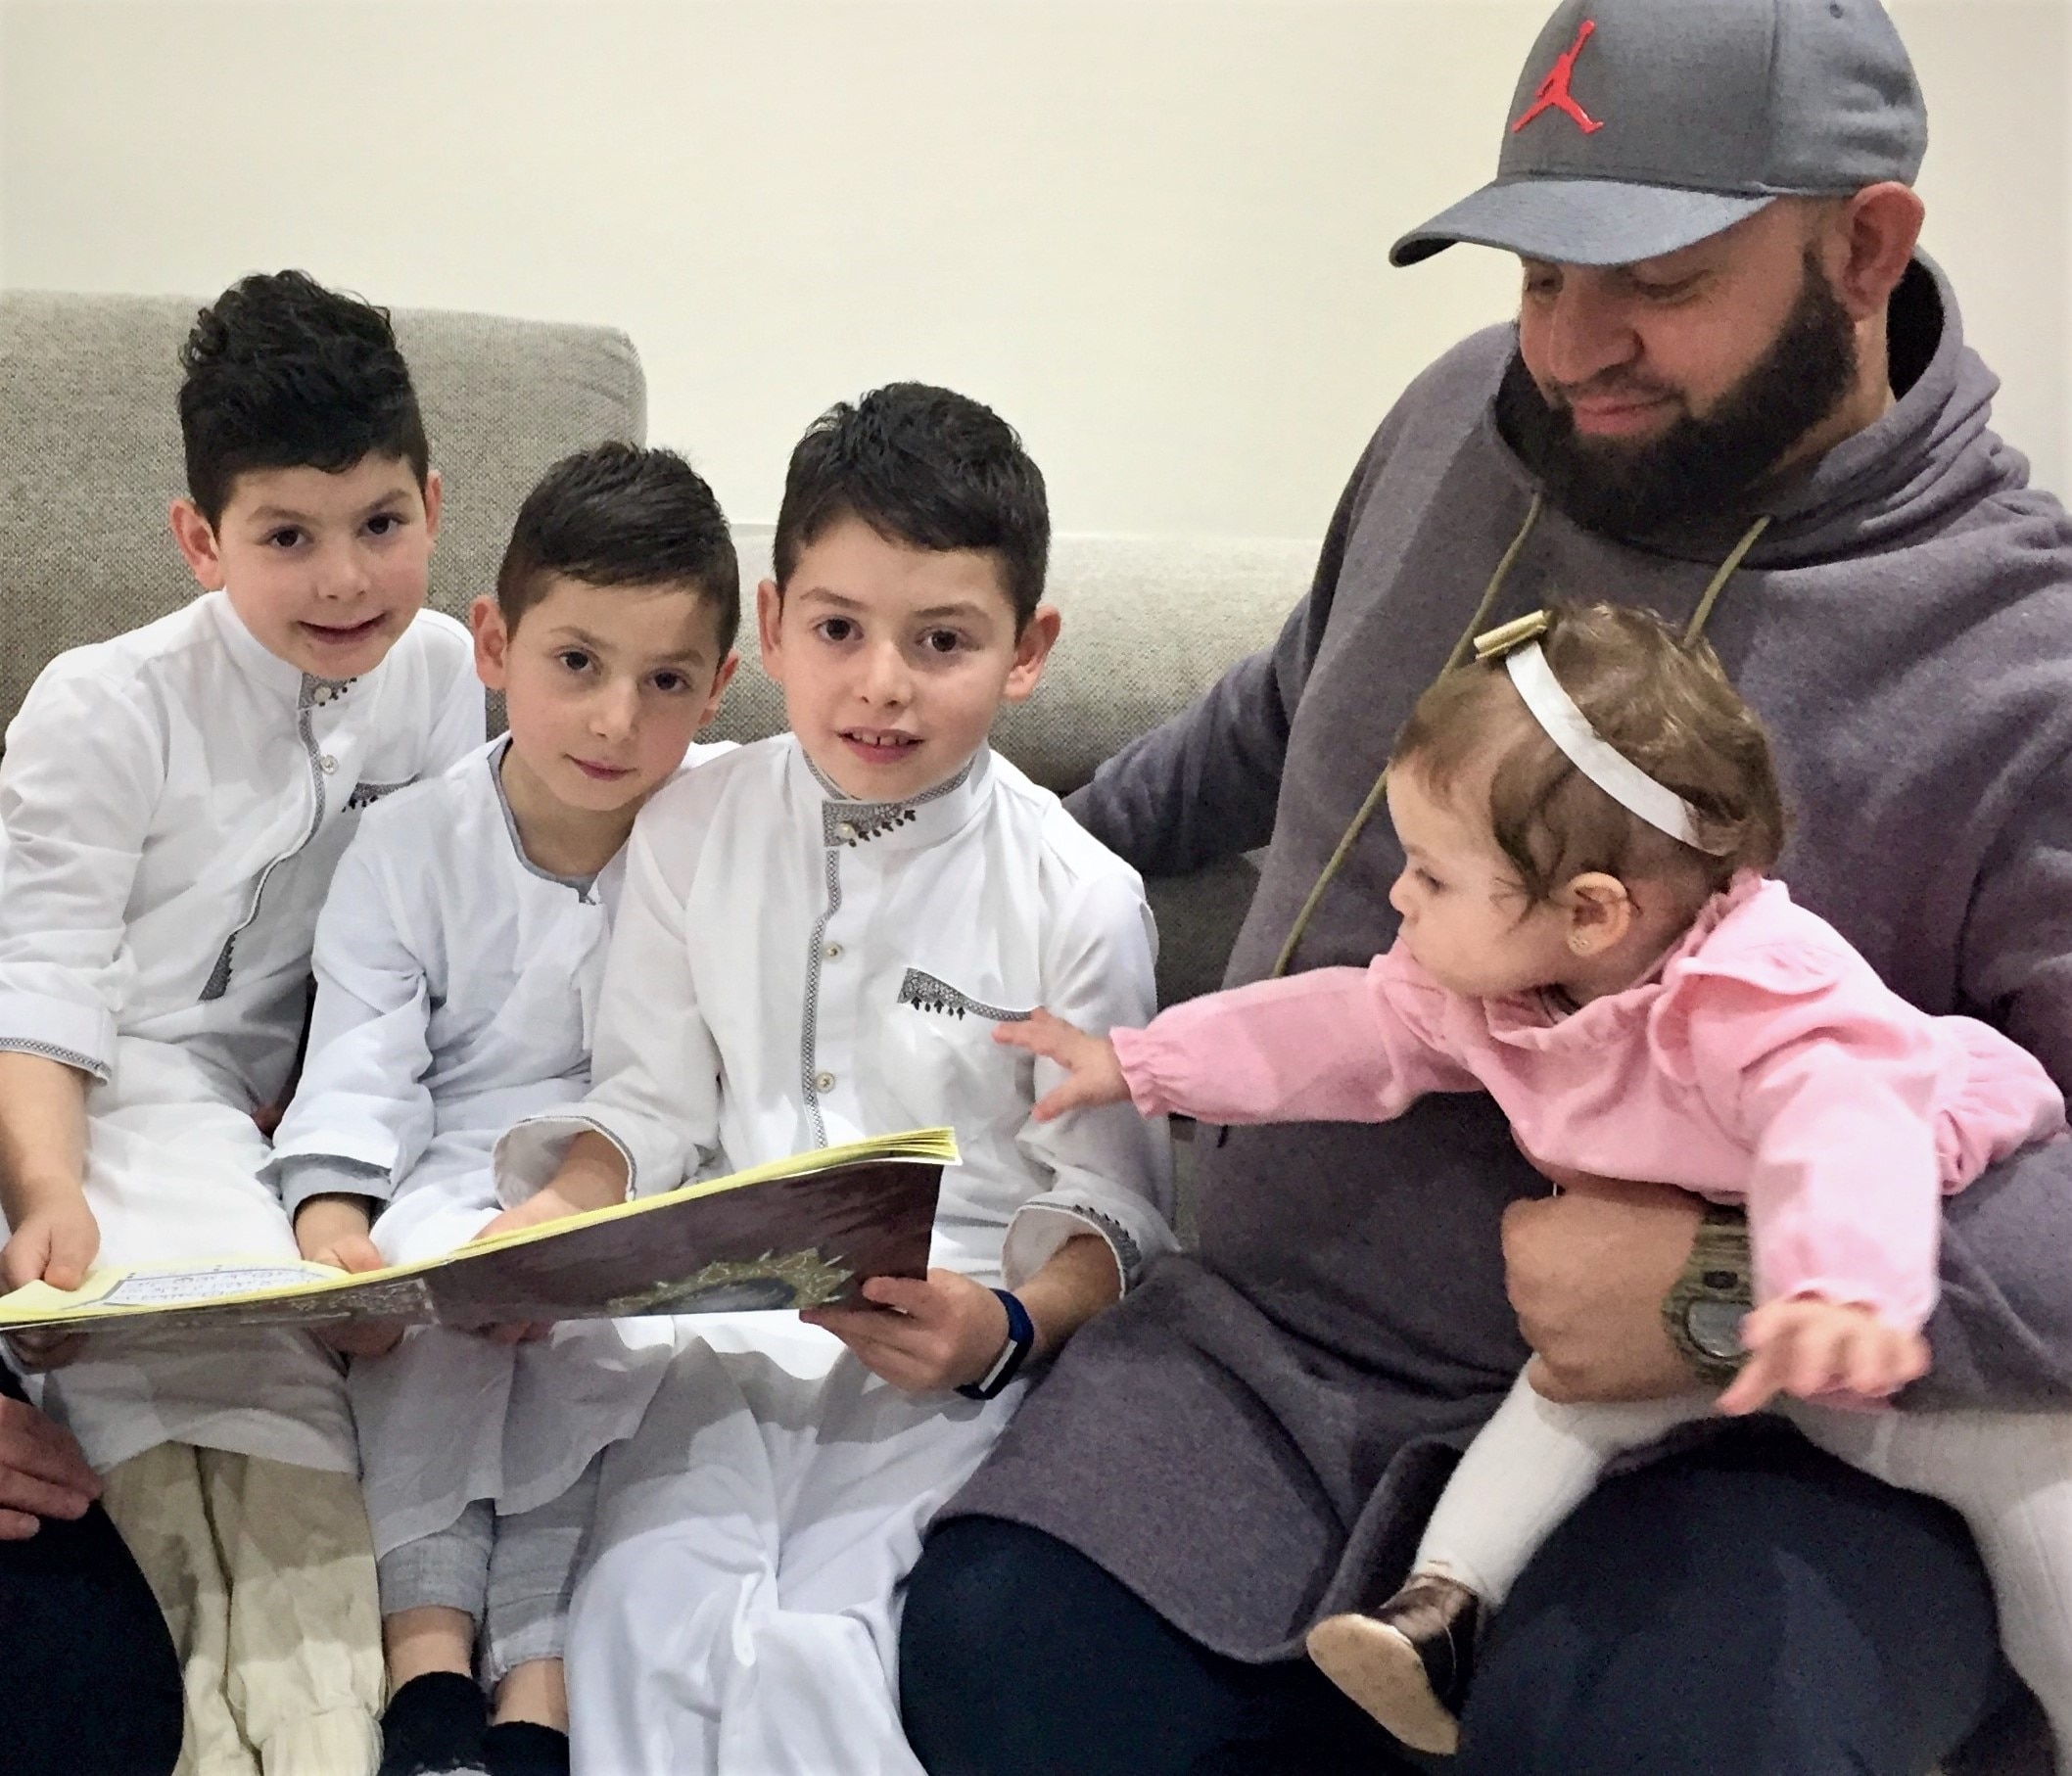 يقوم فؤاد وريم علم الدين بتربية أطفالهما في العقيدة الإسلامية.